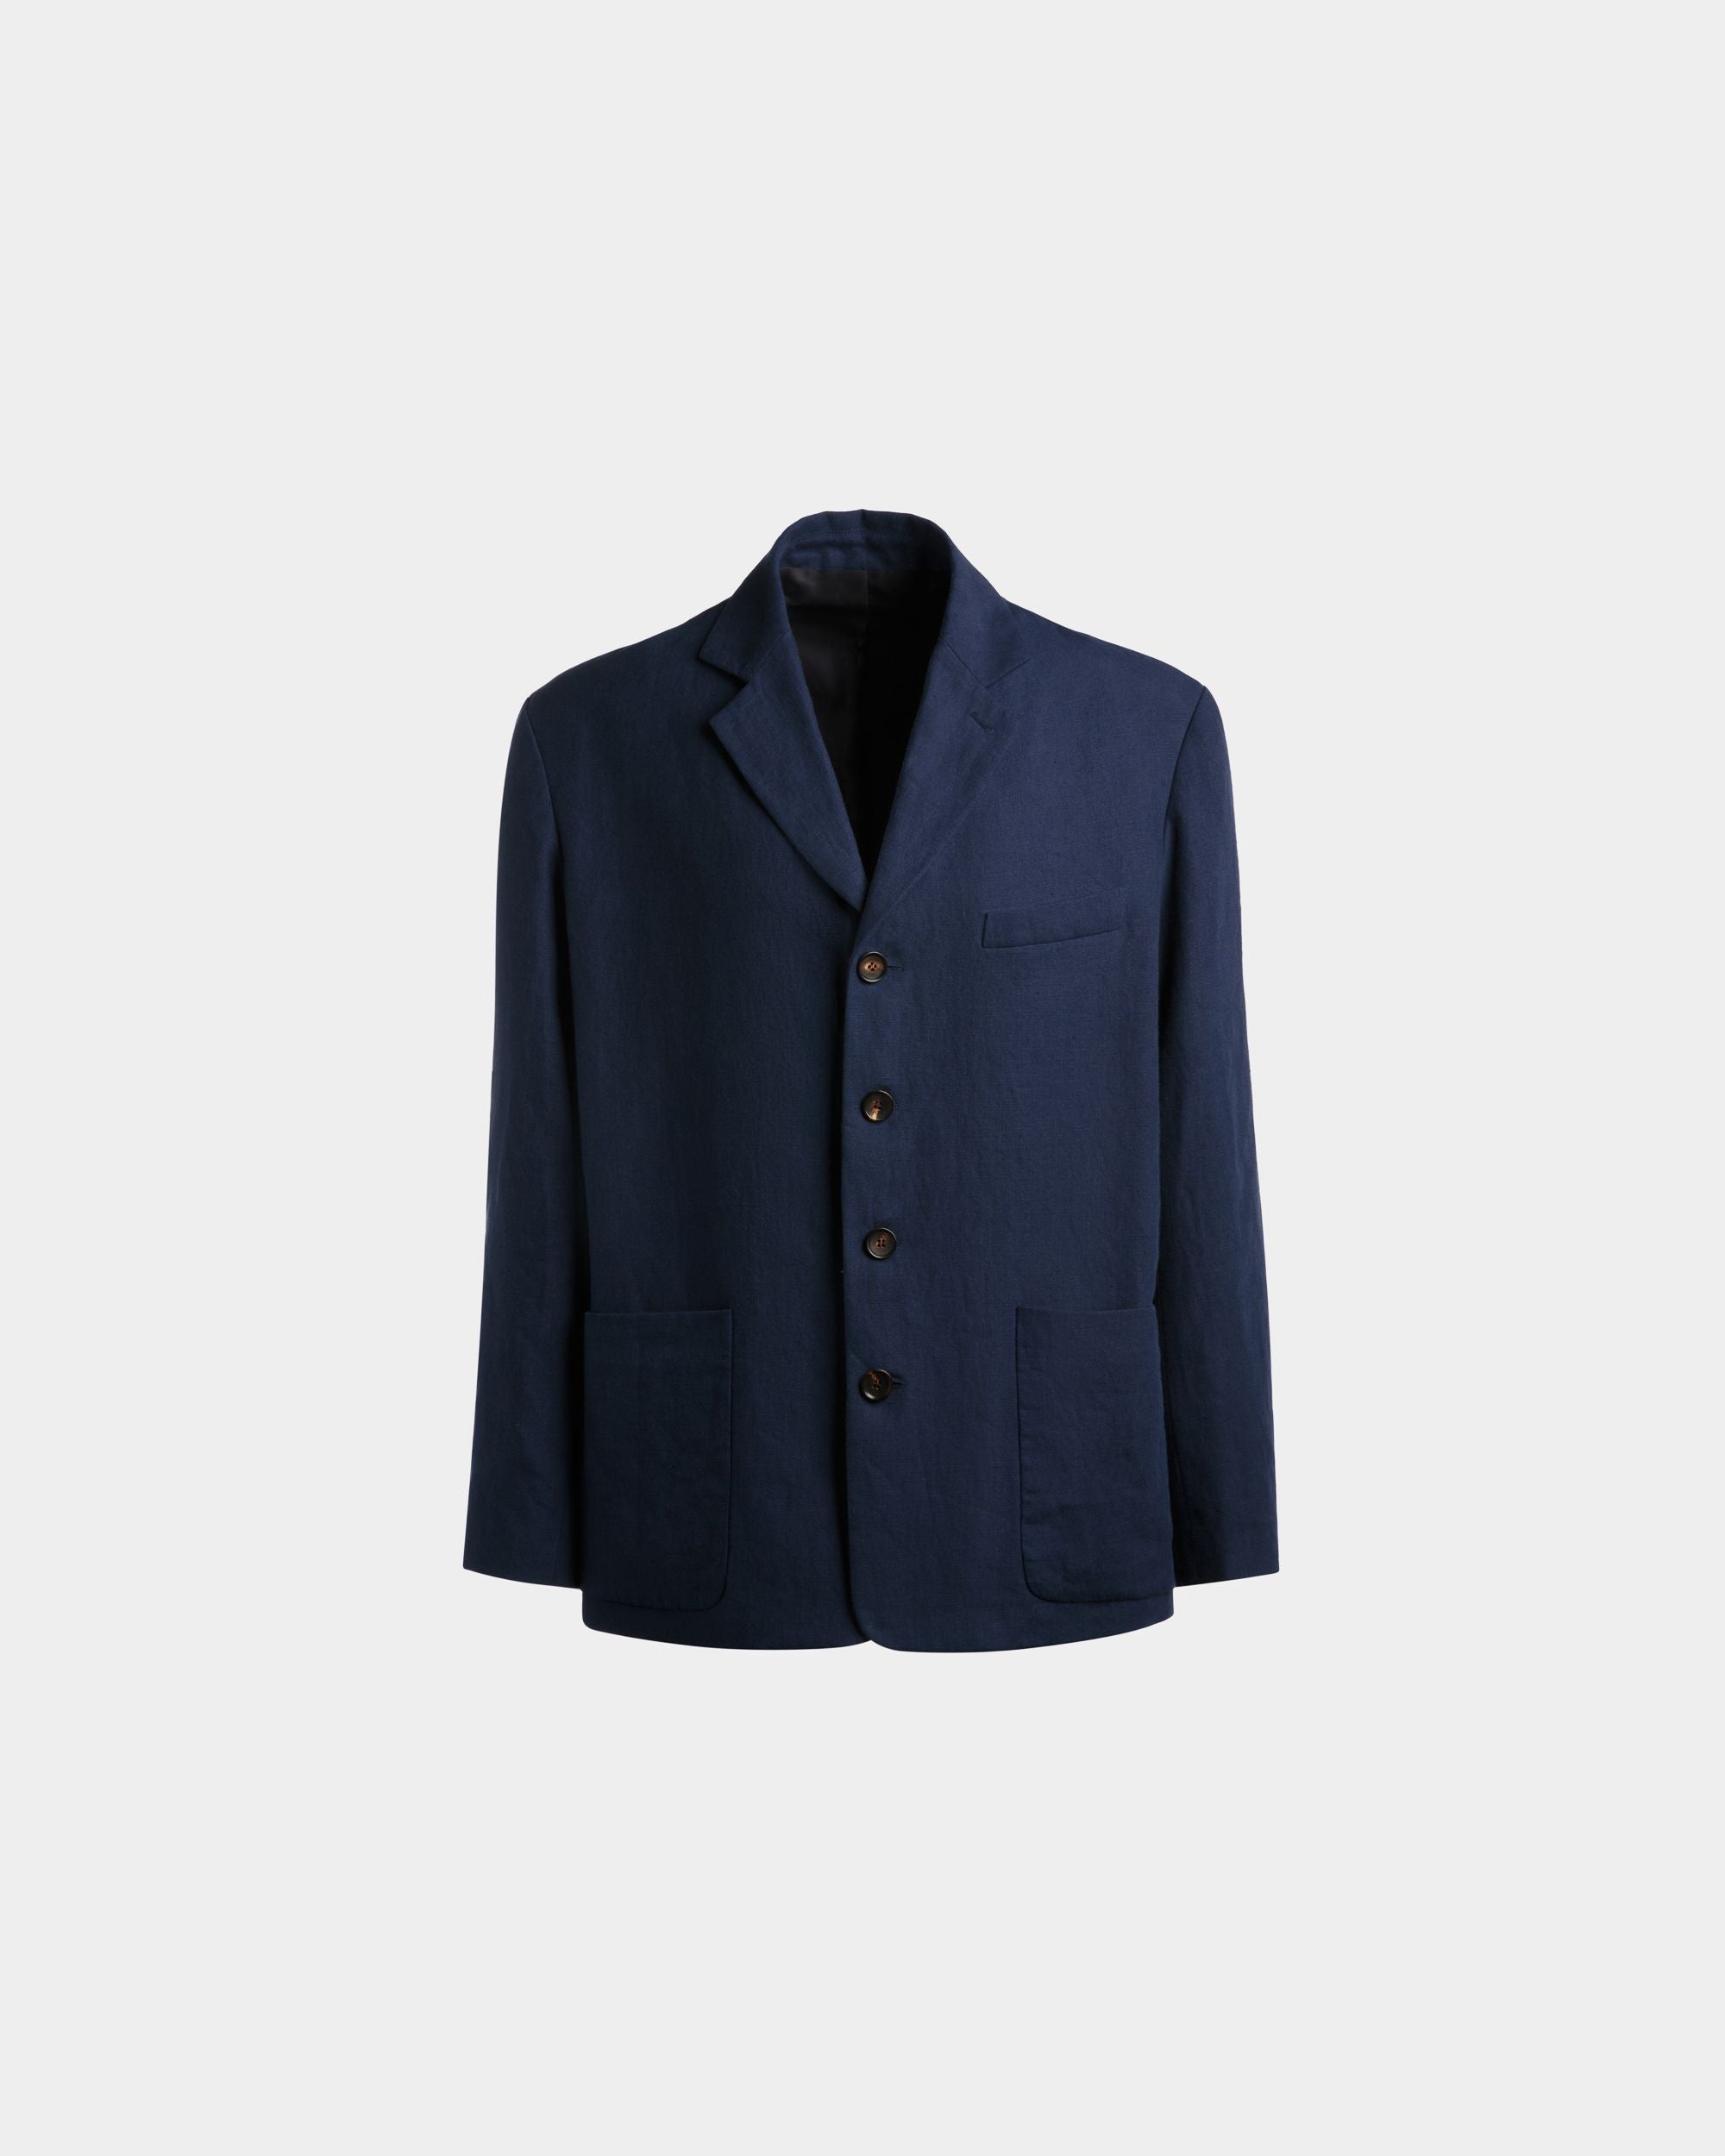 Men's Jacket in Navy Blue Linen | Bally | Still Life Front